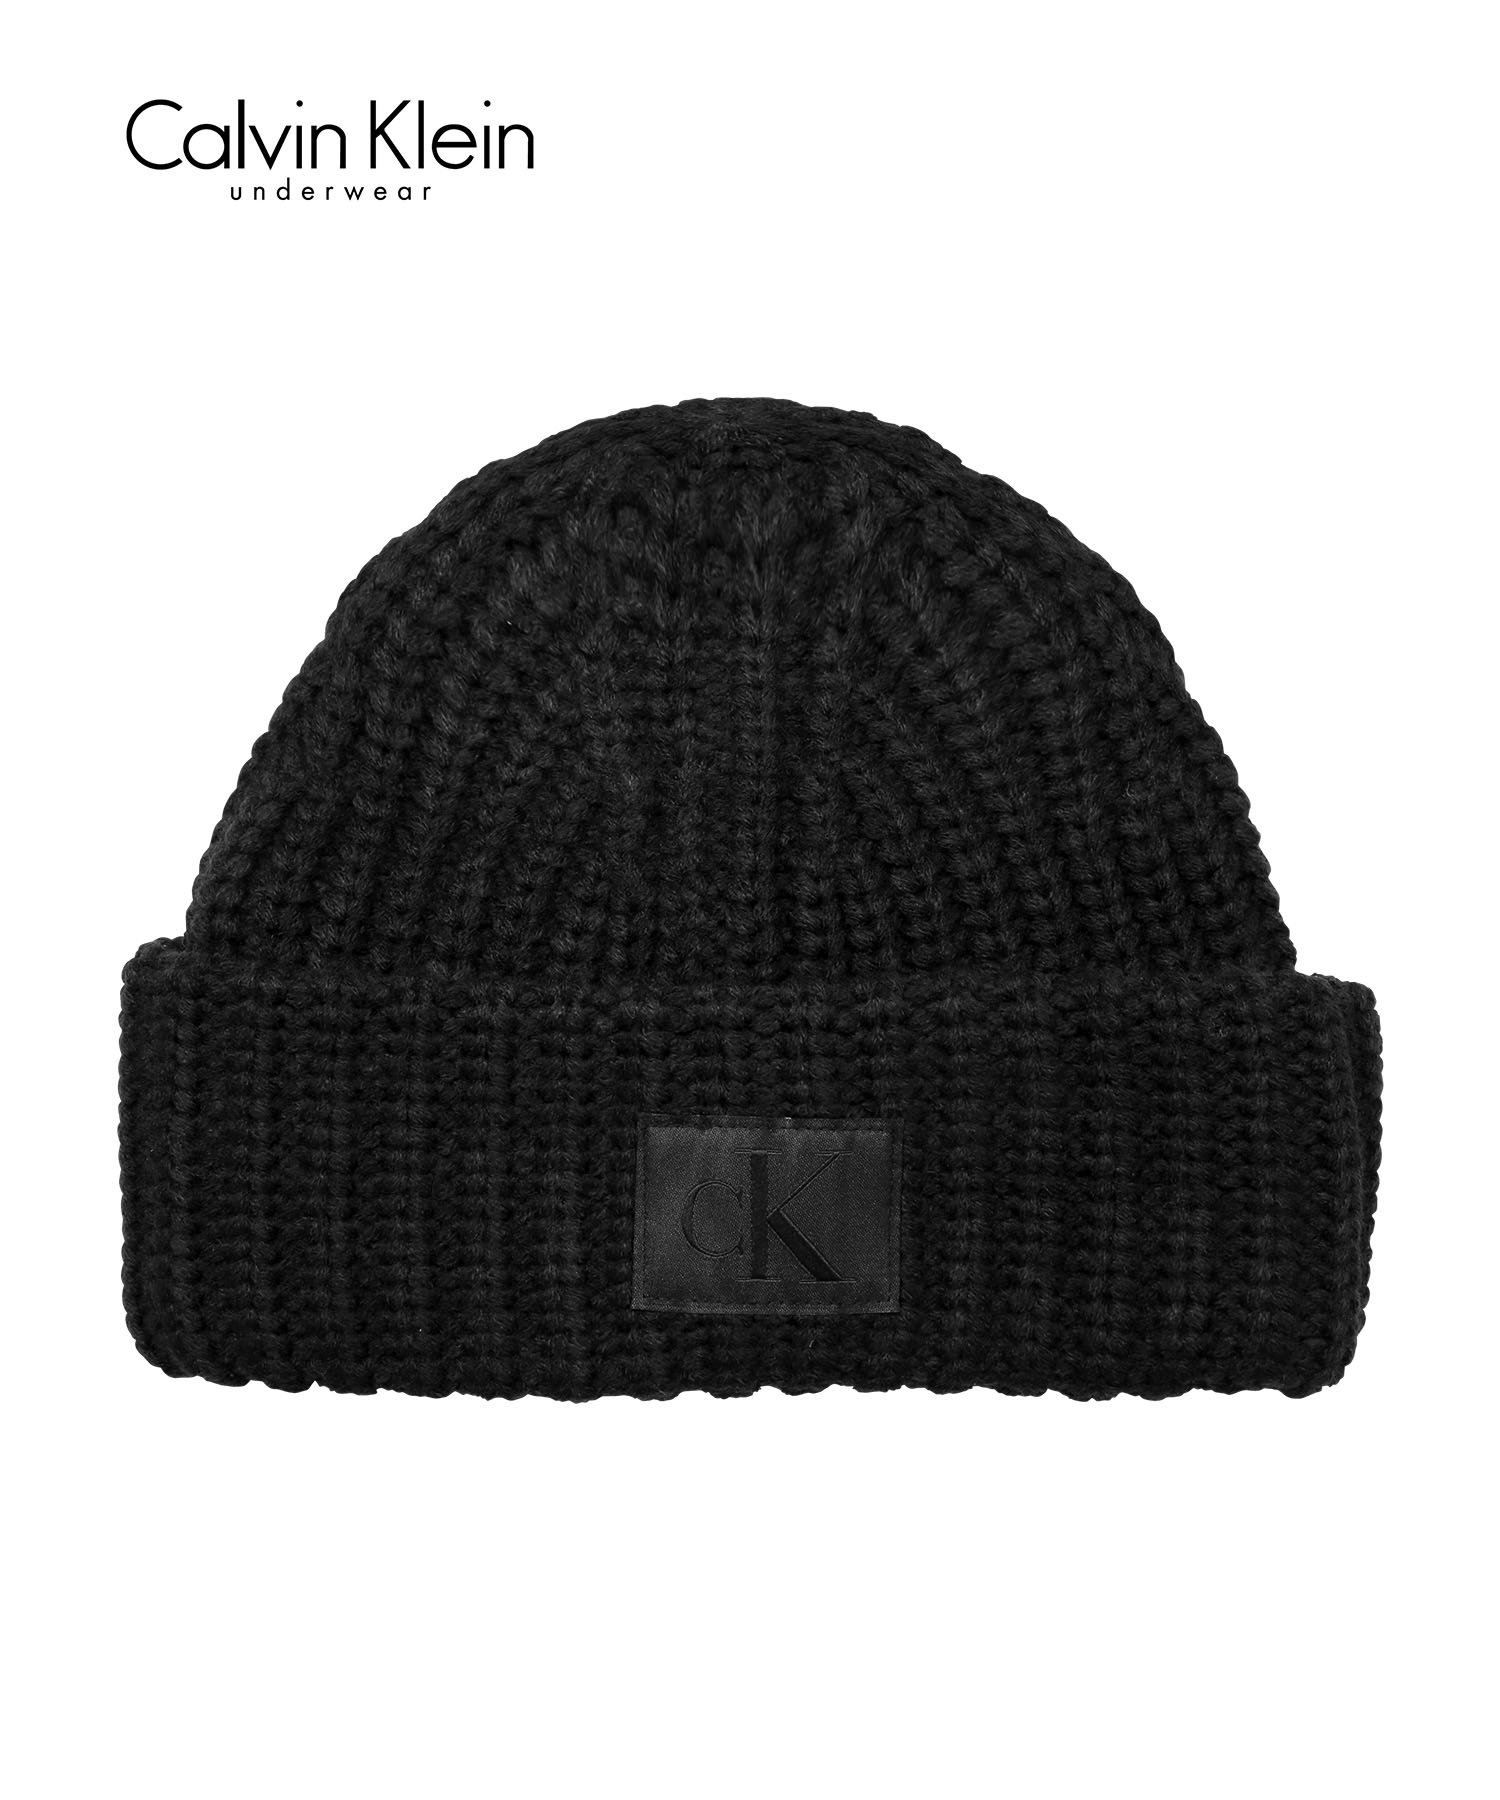 カルバンクライン Calvin Klein ニット帽 ユニセックス 帽子 ビーニー ニットキャップ ワッチ CK ロゴ 高級 ハイブランド